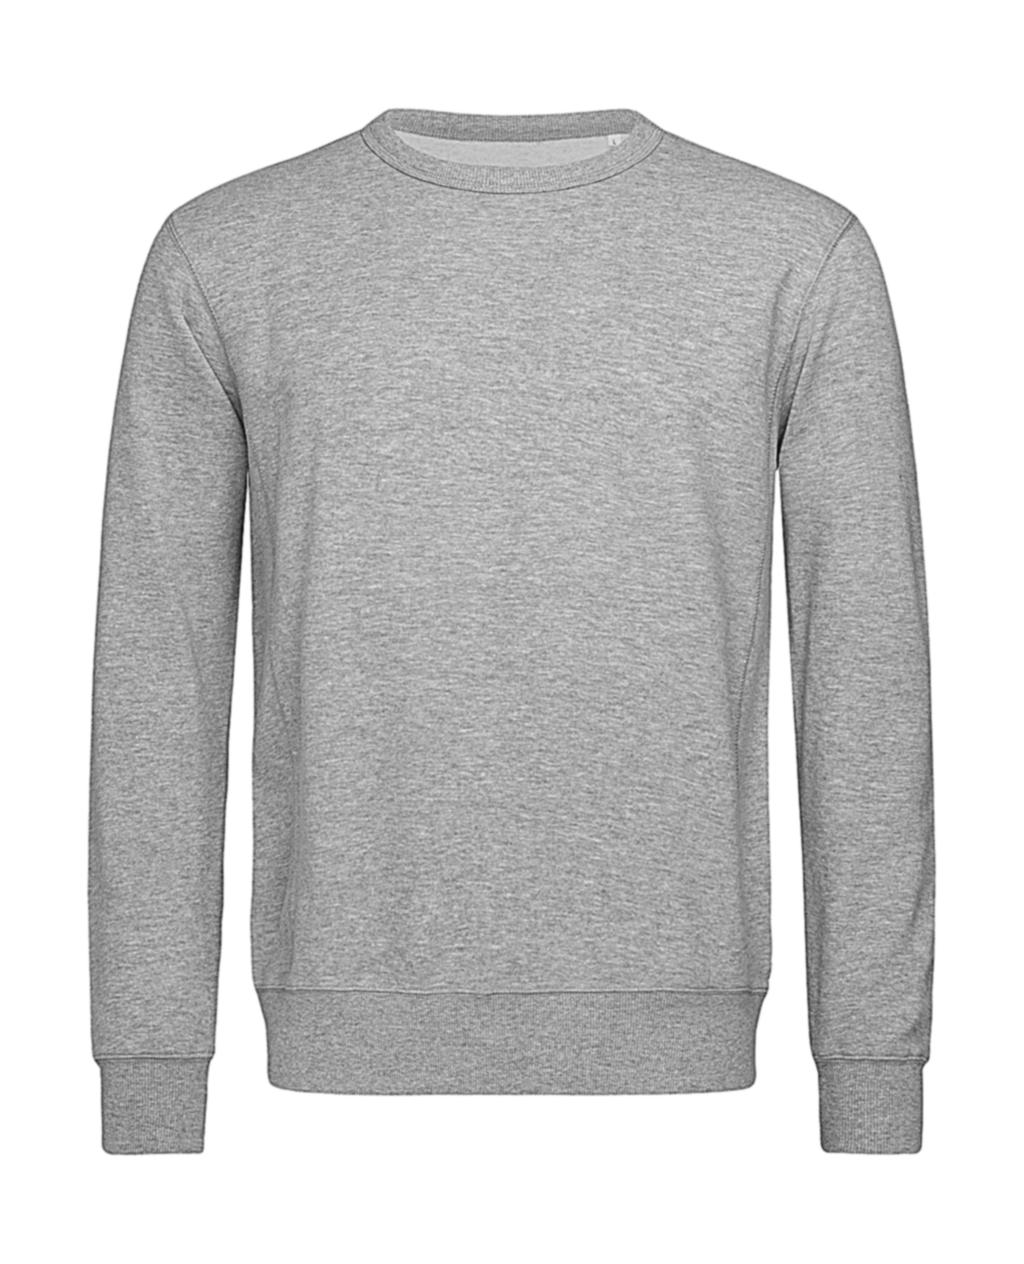  Sweatshirt Select in Farbe Grey Heather